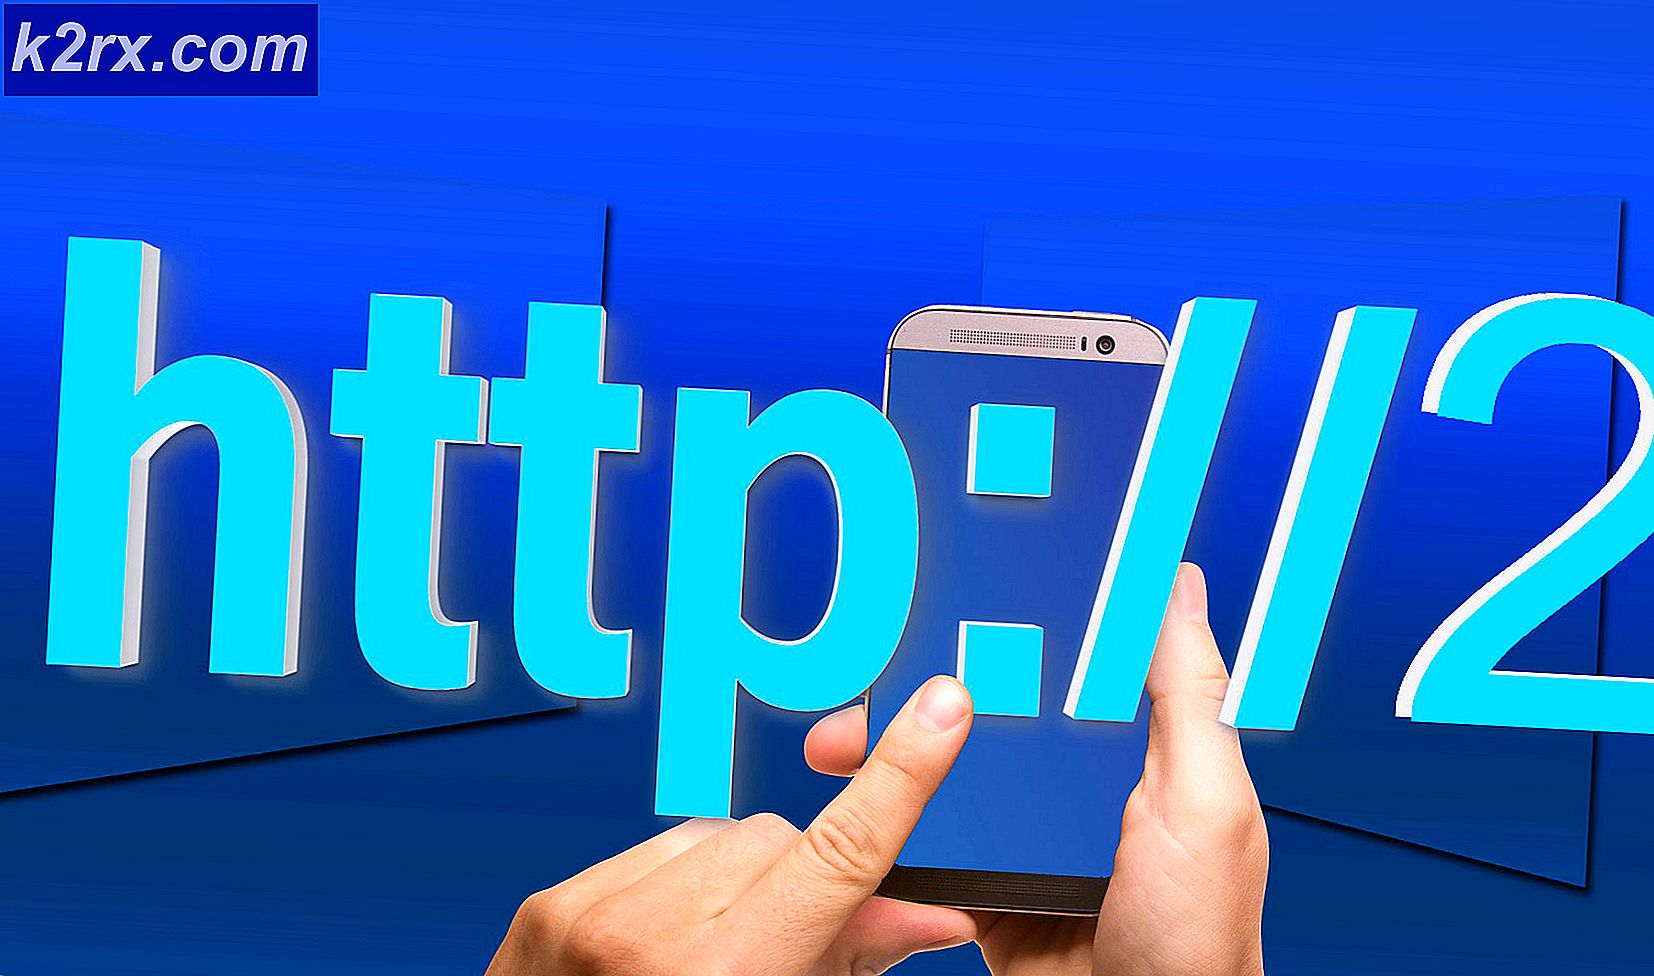 Hvad er HTTP / 2 og hvad gør det?